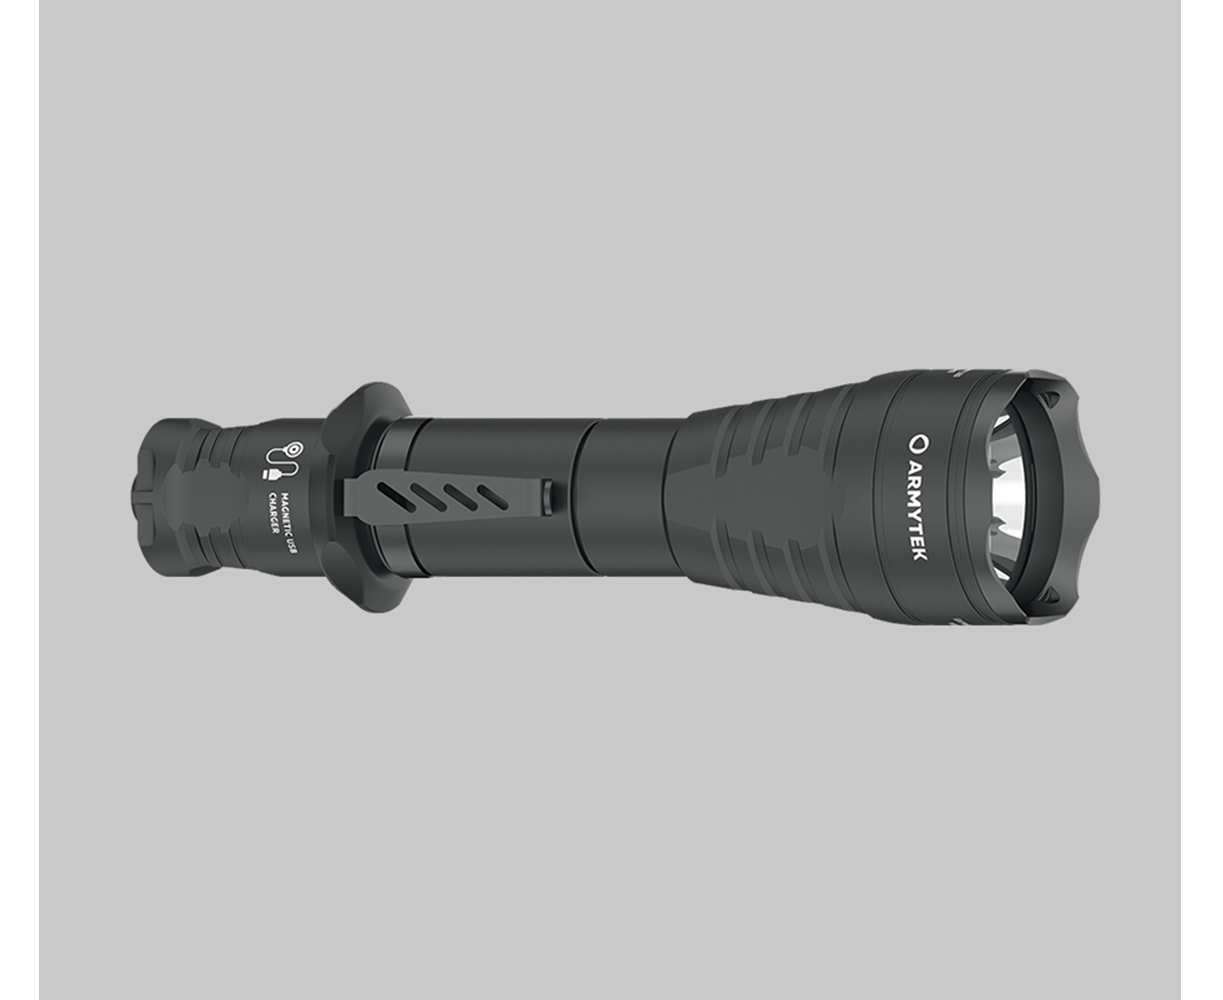 Predator Pro Hunting Kit Flashlight